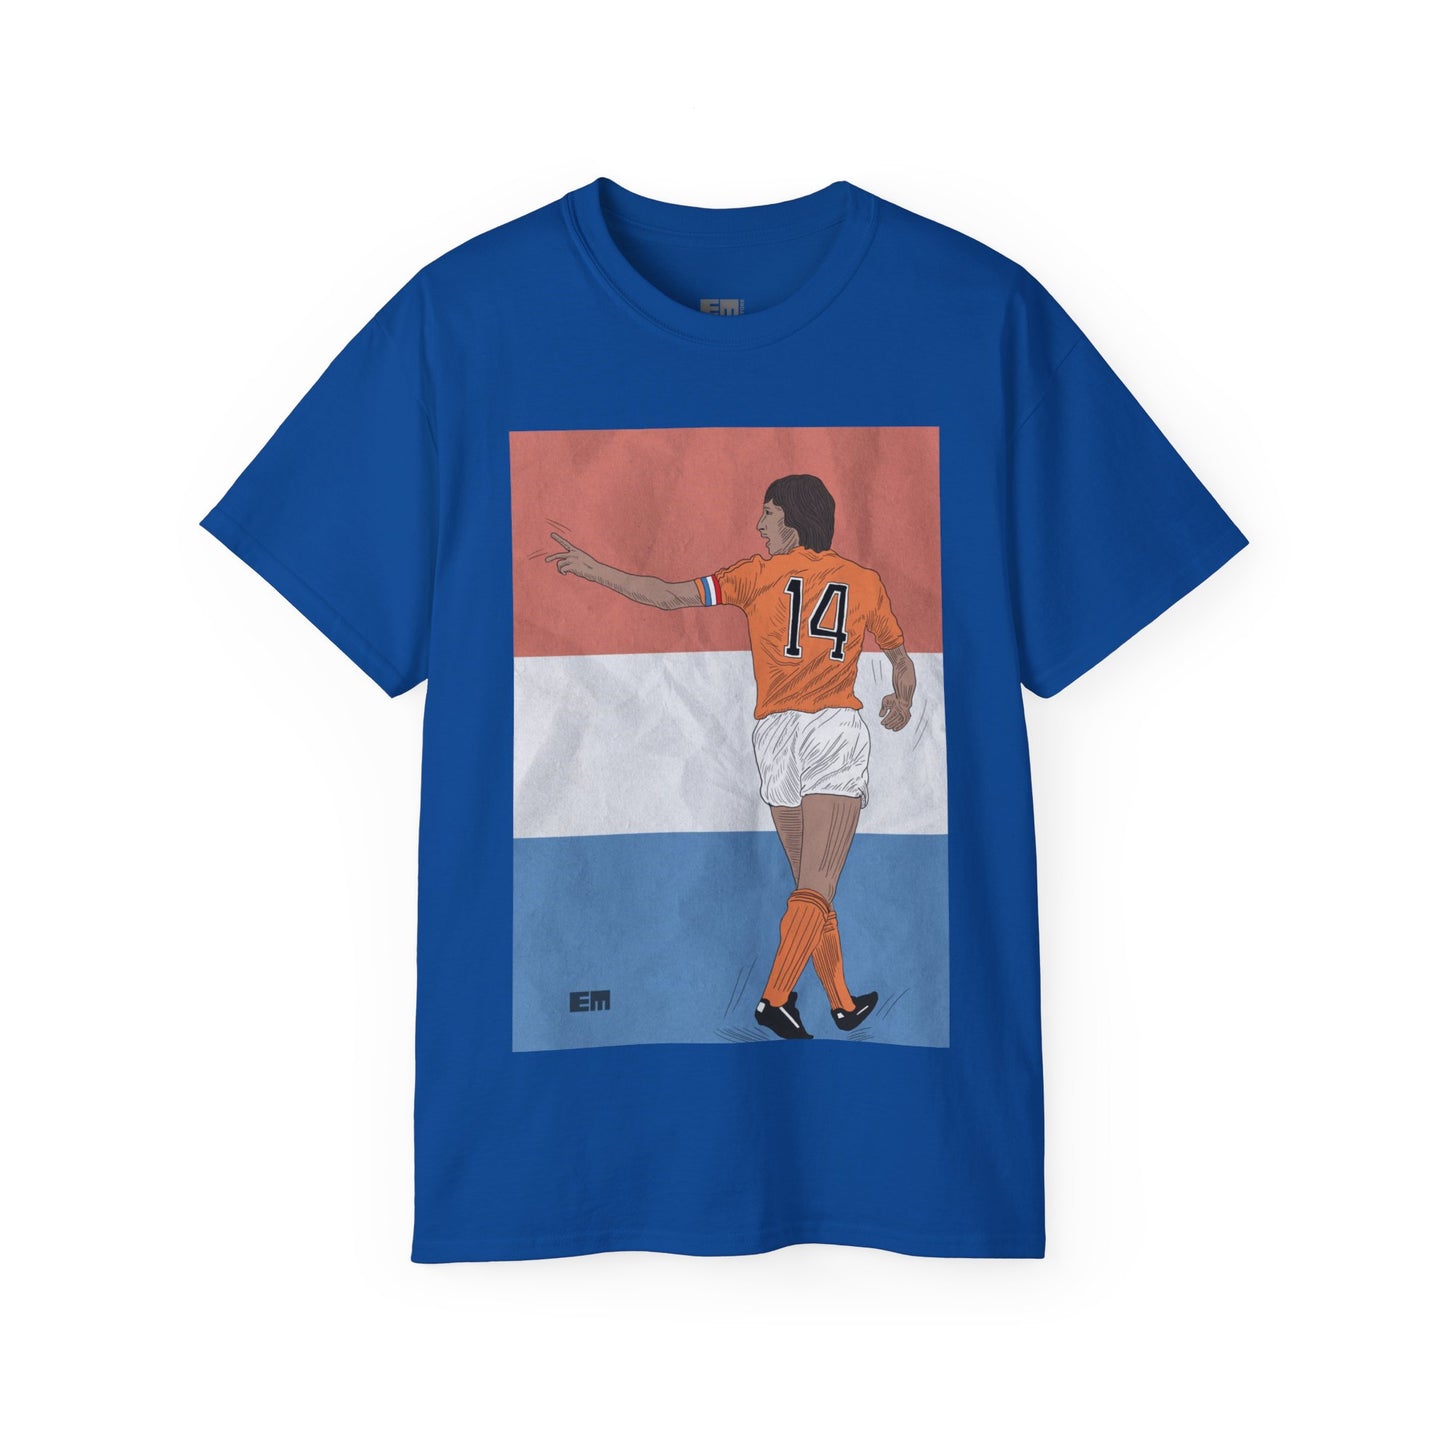 T-shirt Cruyff playing soccer